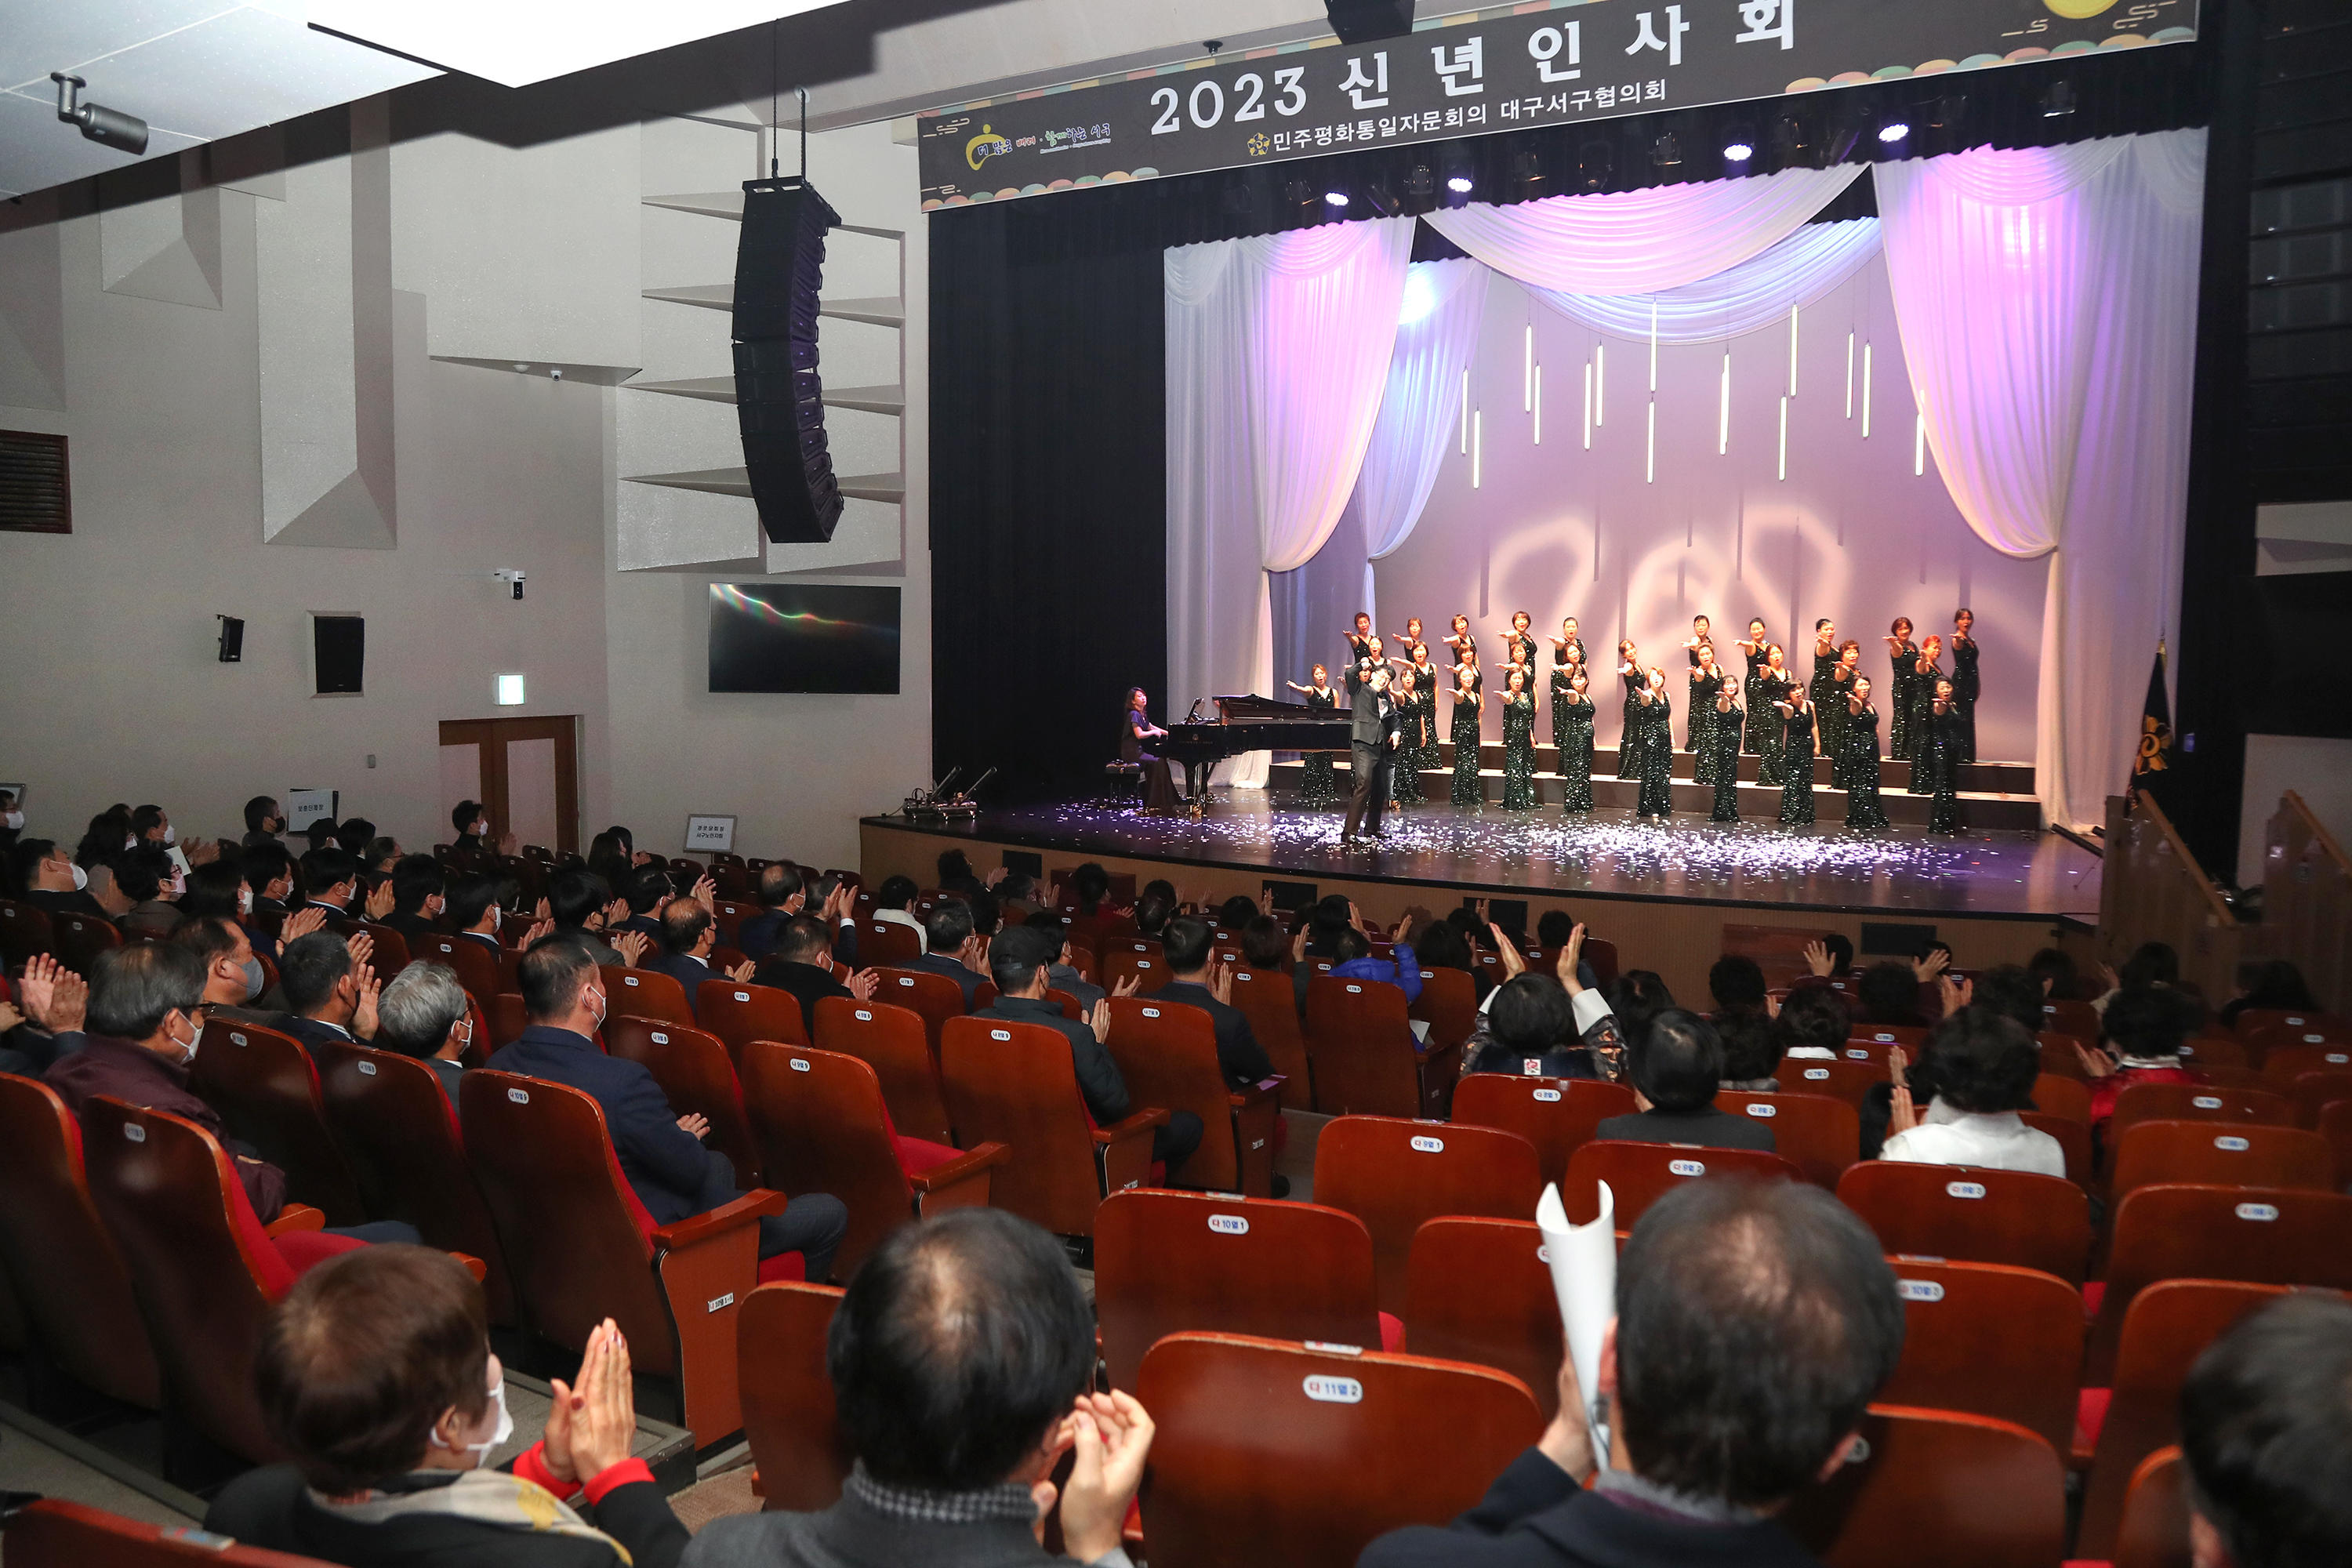 2023 신년인사회 축하공연 4